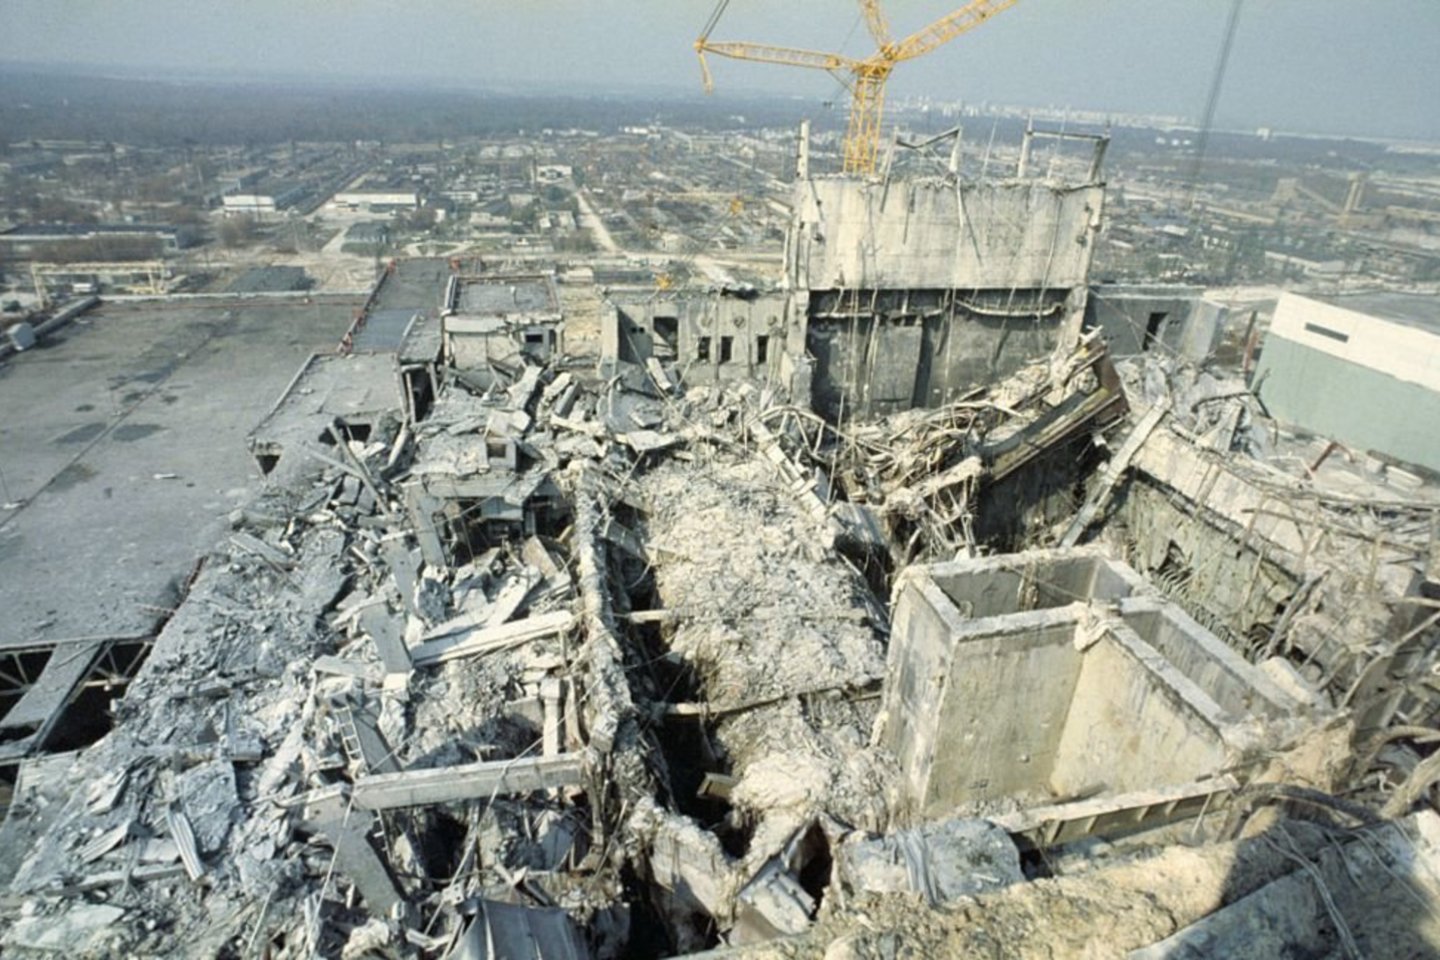 BBC žurnalistai  pasikalbėjo su O.Breusu apie tai, kas vyko tomis nelemtomis dienomis ir kiek tiesos apie Černobylio tragediją naujajame HBO seriale.<br>Ukrainos naujienų agentūros nuotr.